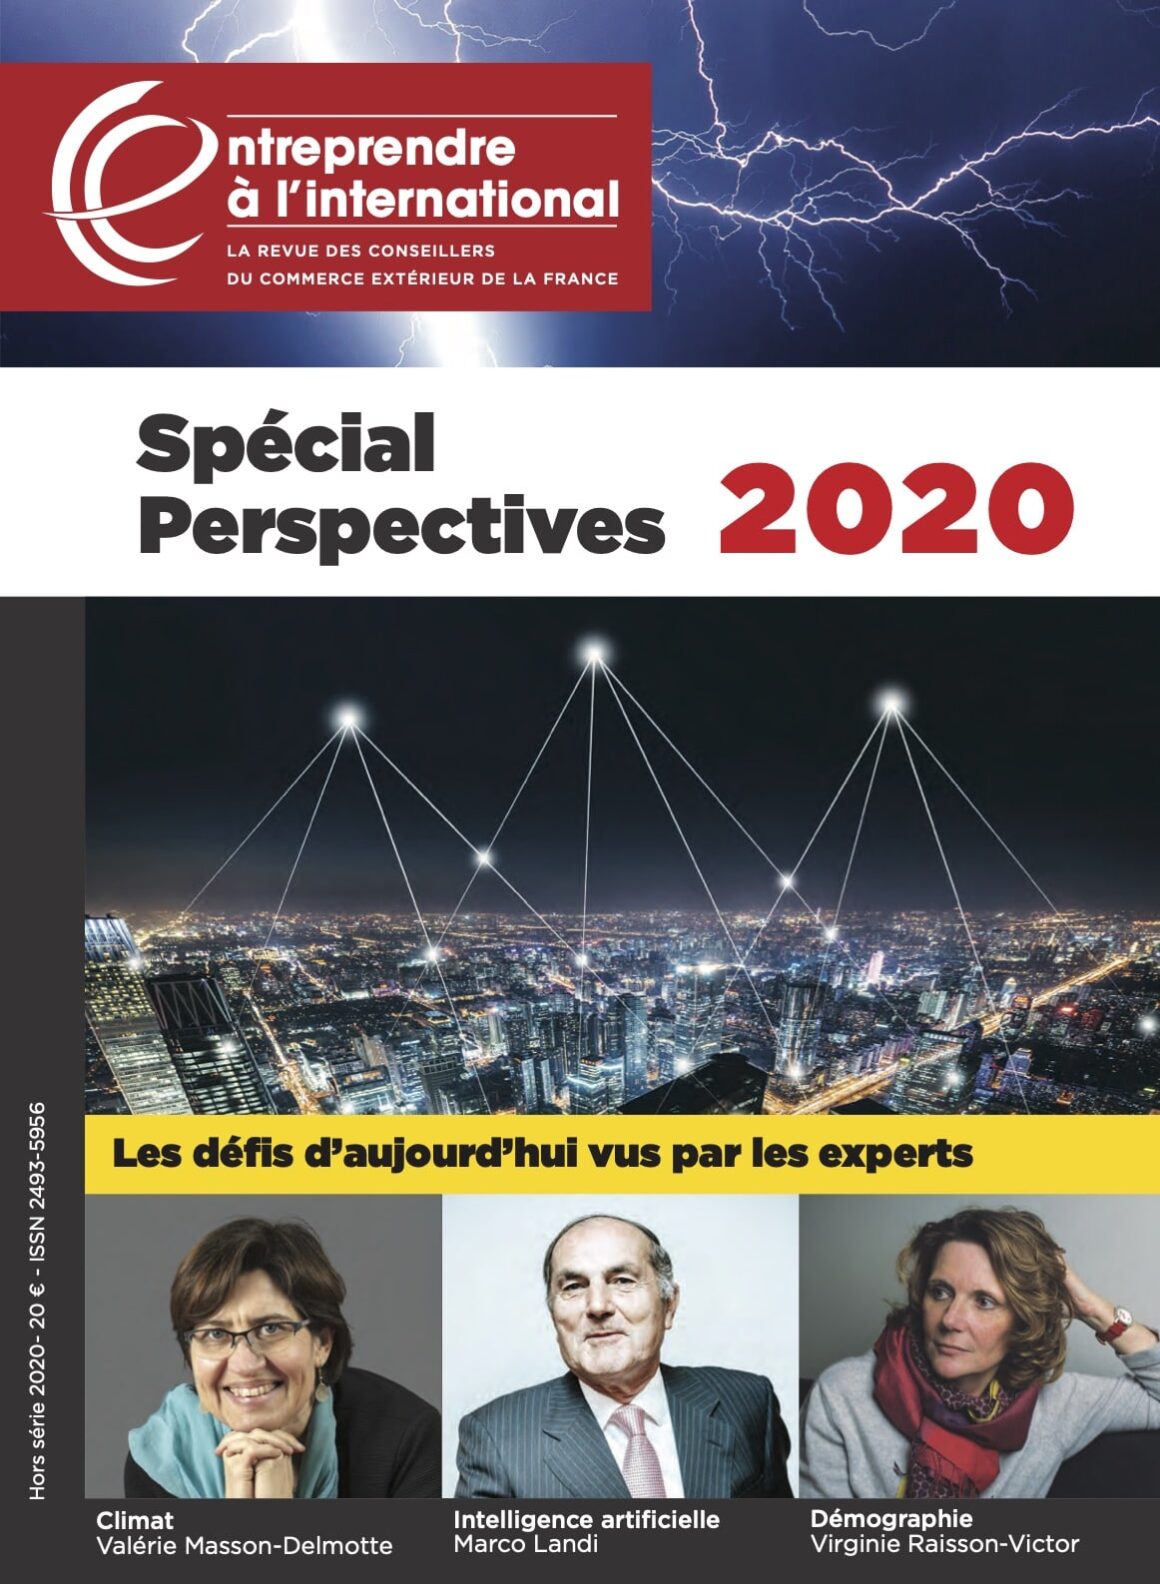 PUBLI REPORTAGE DANS LA REVUE DES CONSEILLERS DU COMMERCE EXTERIEUR DE LA FRANCE (SPECIAL PERSPECTIVES 2020)